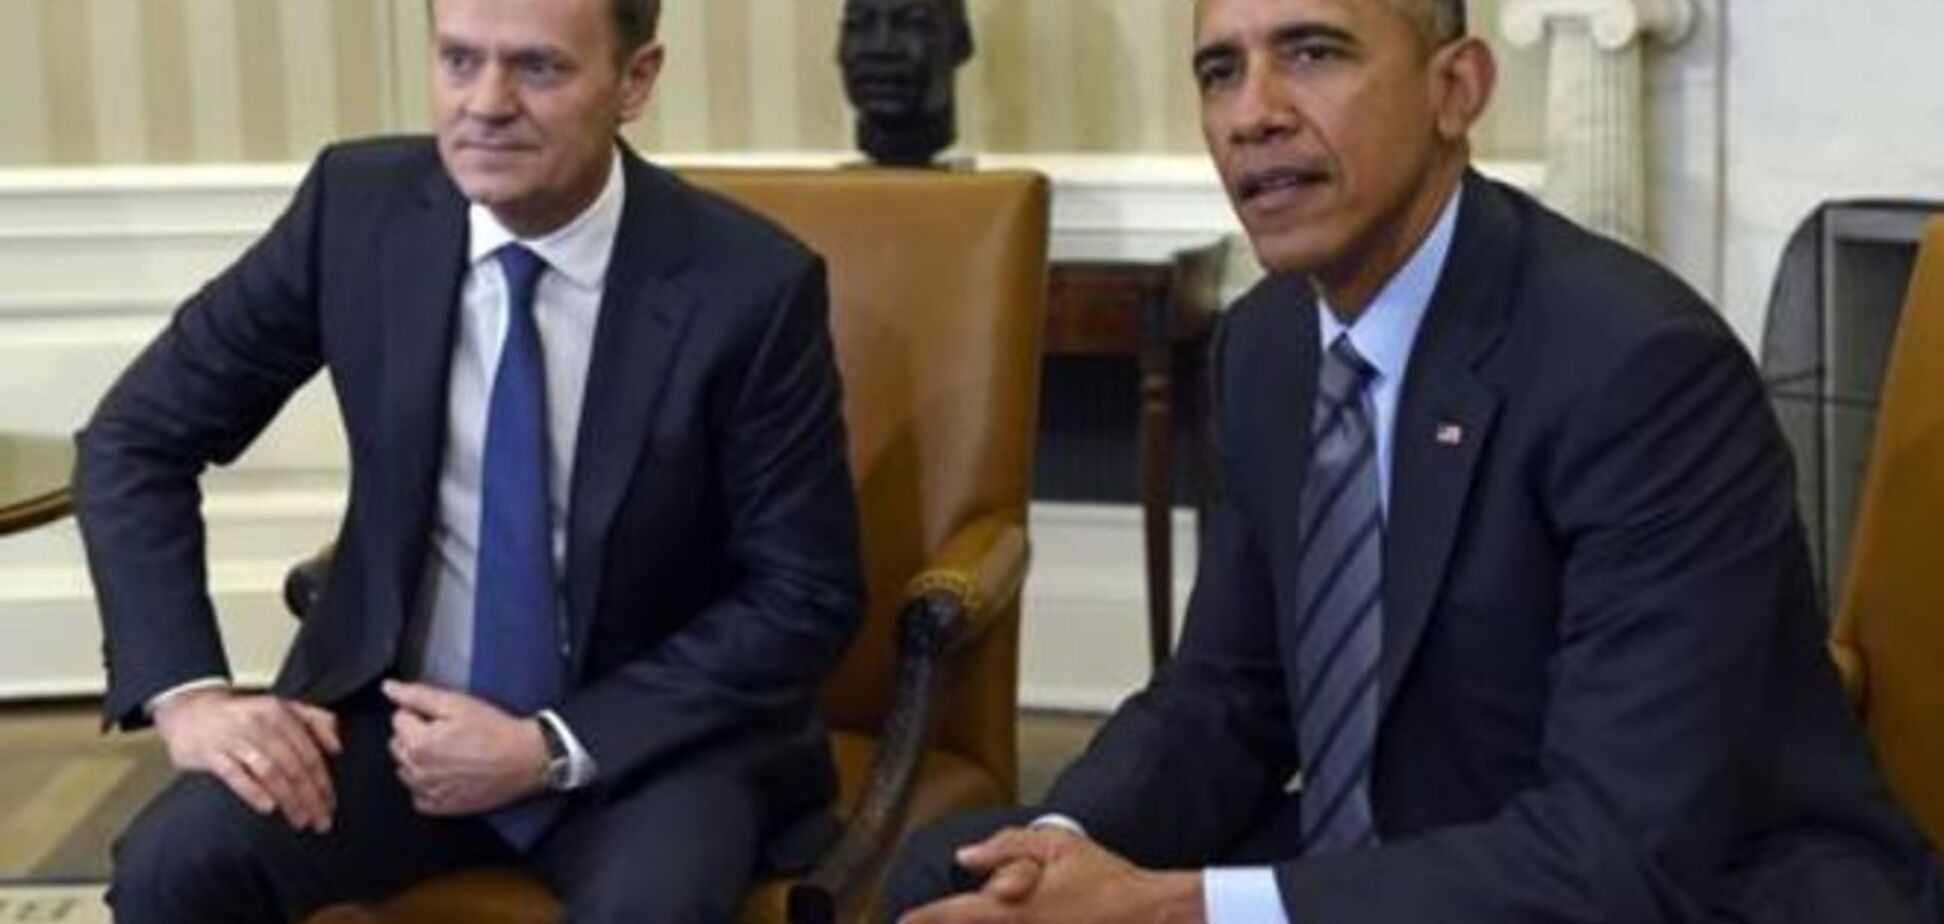 ЄС і США повинні попрацювати над економічним успіхом України - Обама